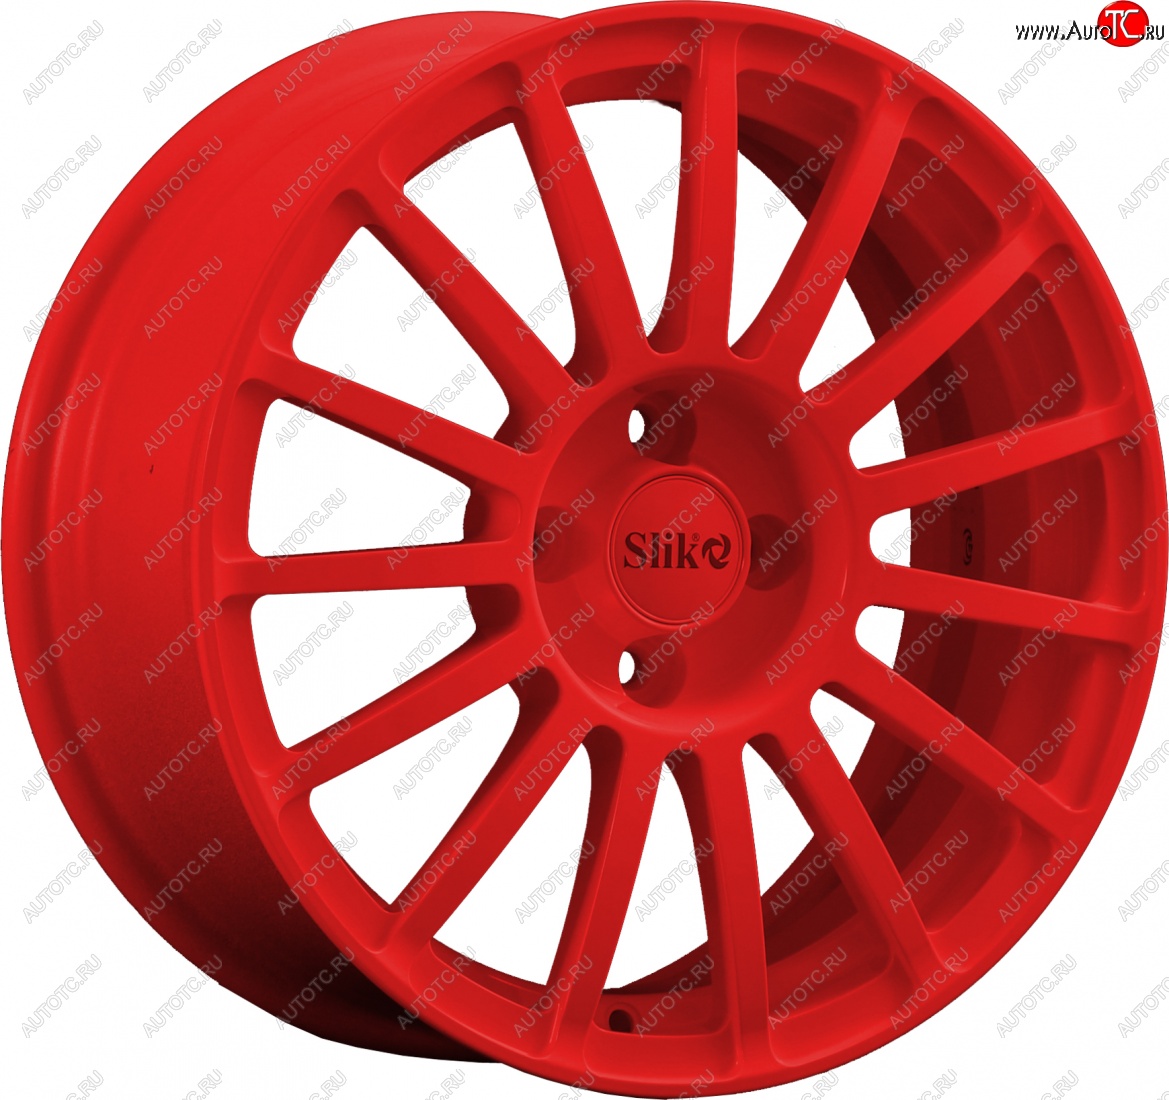 18 999 р. Кованый диск Slik classik R16x6.5 Candy RED красный 6.5x16   (Цвет: Candy RED красный 6.5x16)